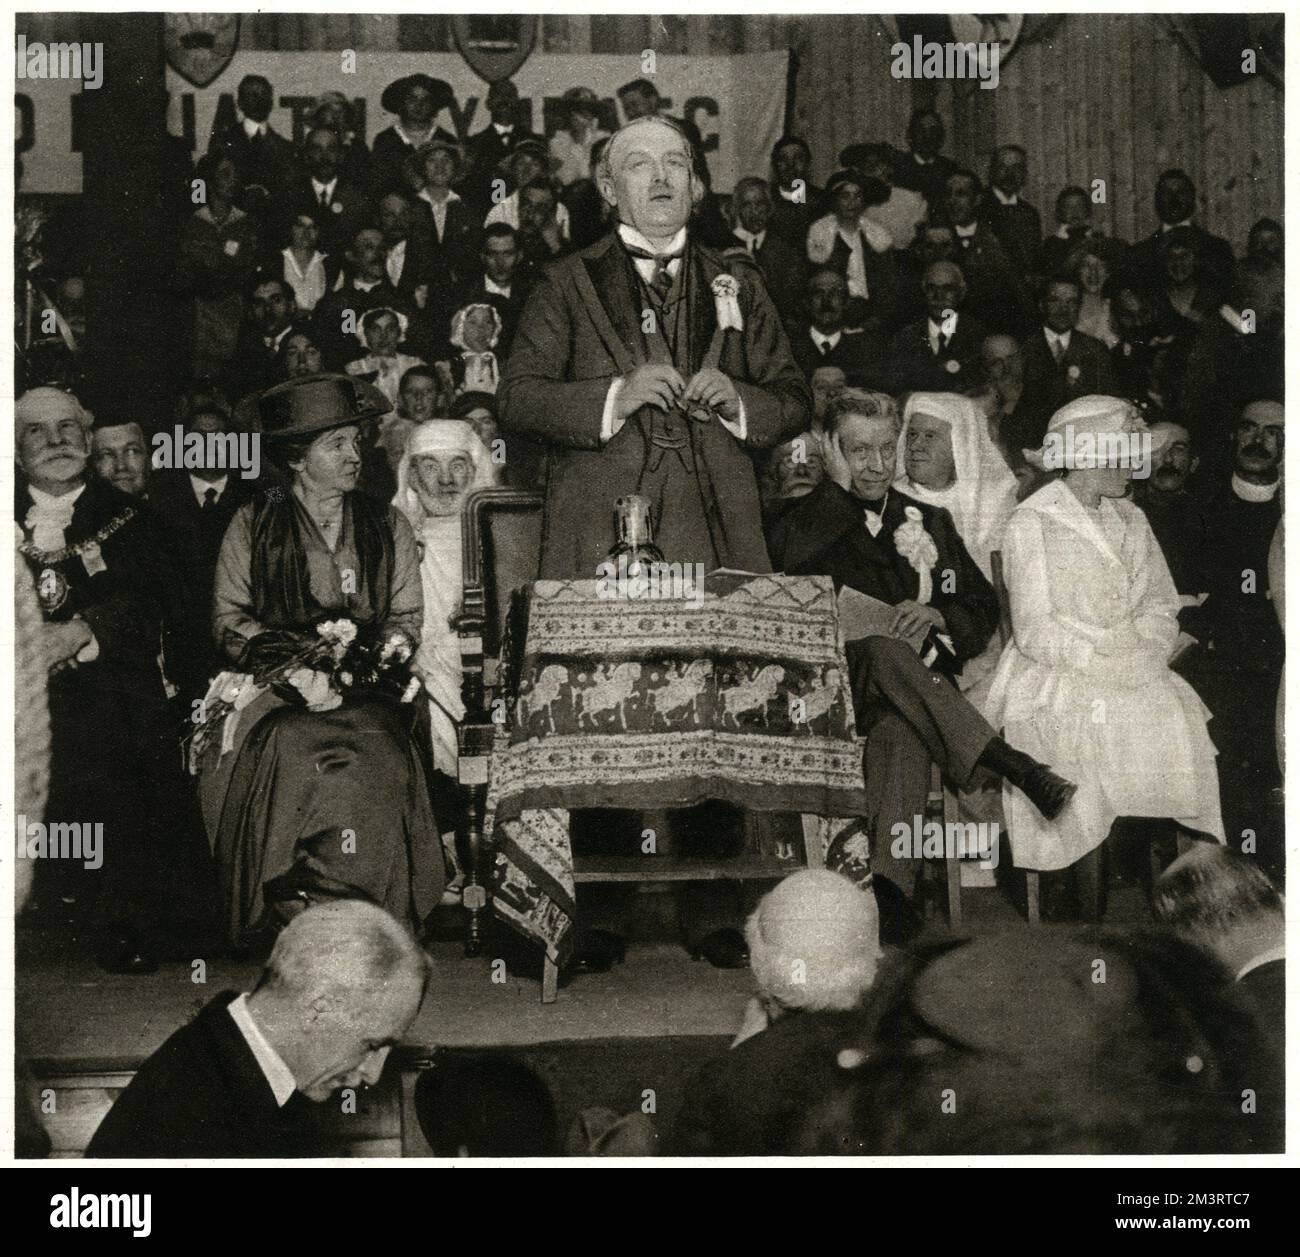 Le Premier ministre, David Lloyd George, a prononcé un discours à l'Eisteddfod national du pays de Galles à Birkenhead en 1917. Date: 1917 Banque D'Images